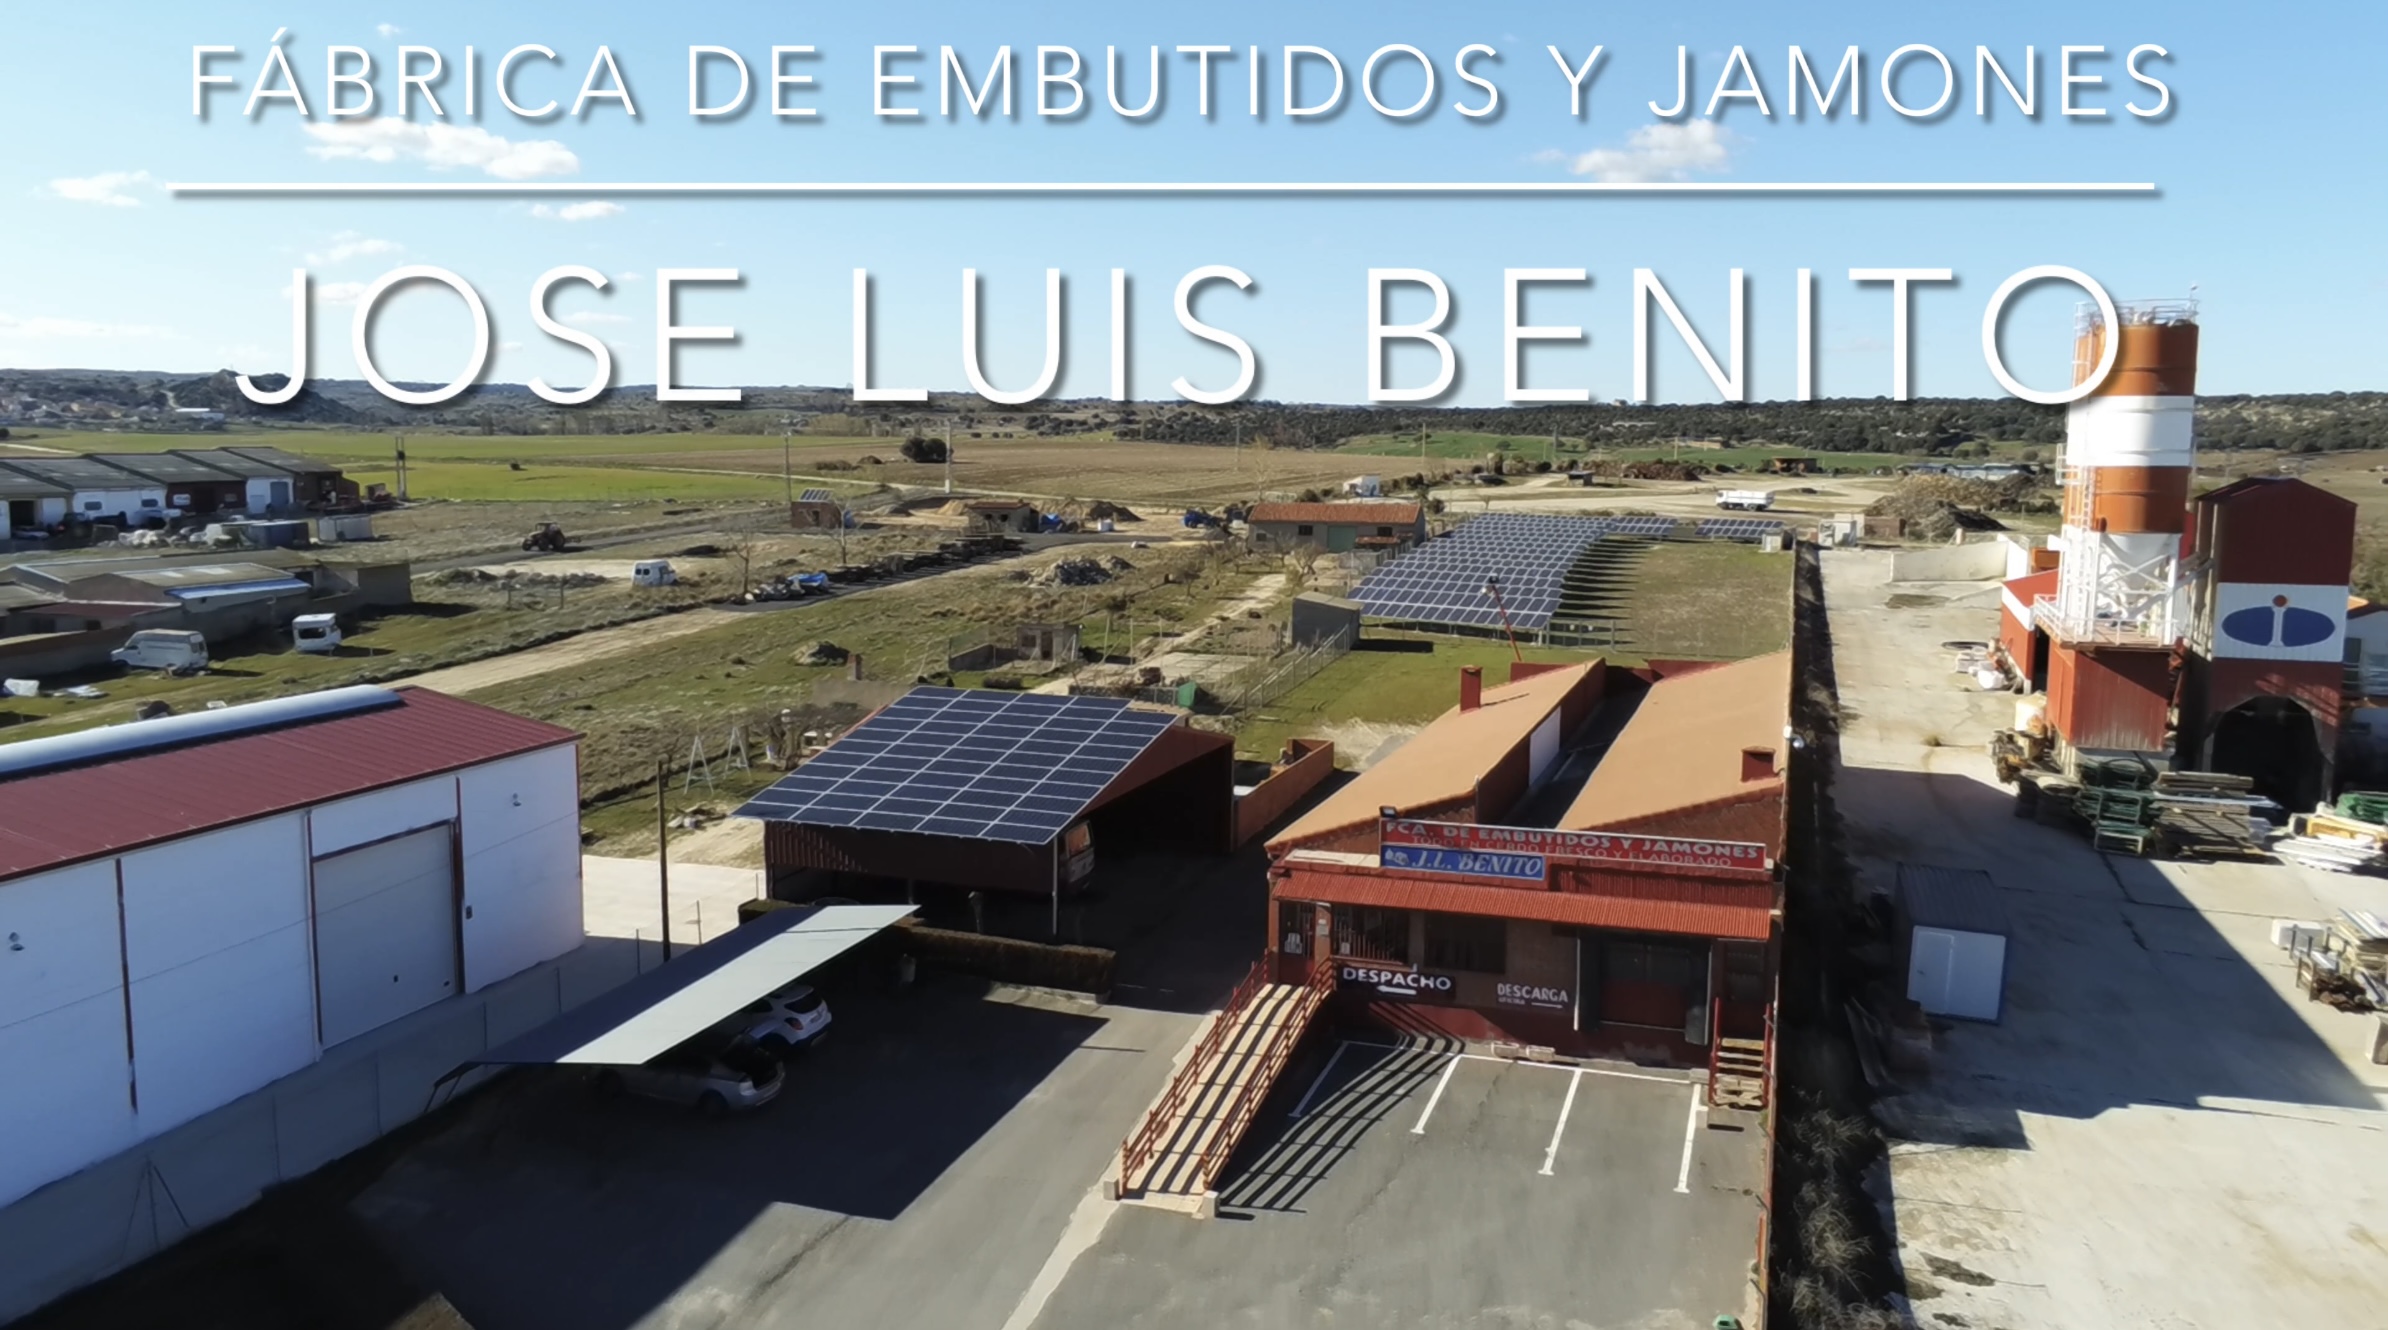 Instalación de autoconsumo en fábrica de embutidos y jamones, La Colilla, Ávila